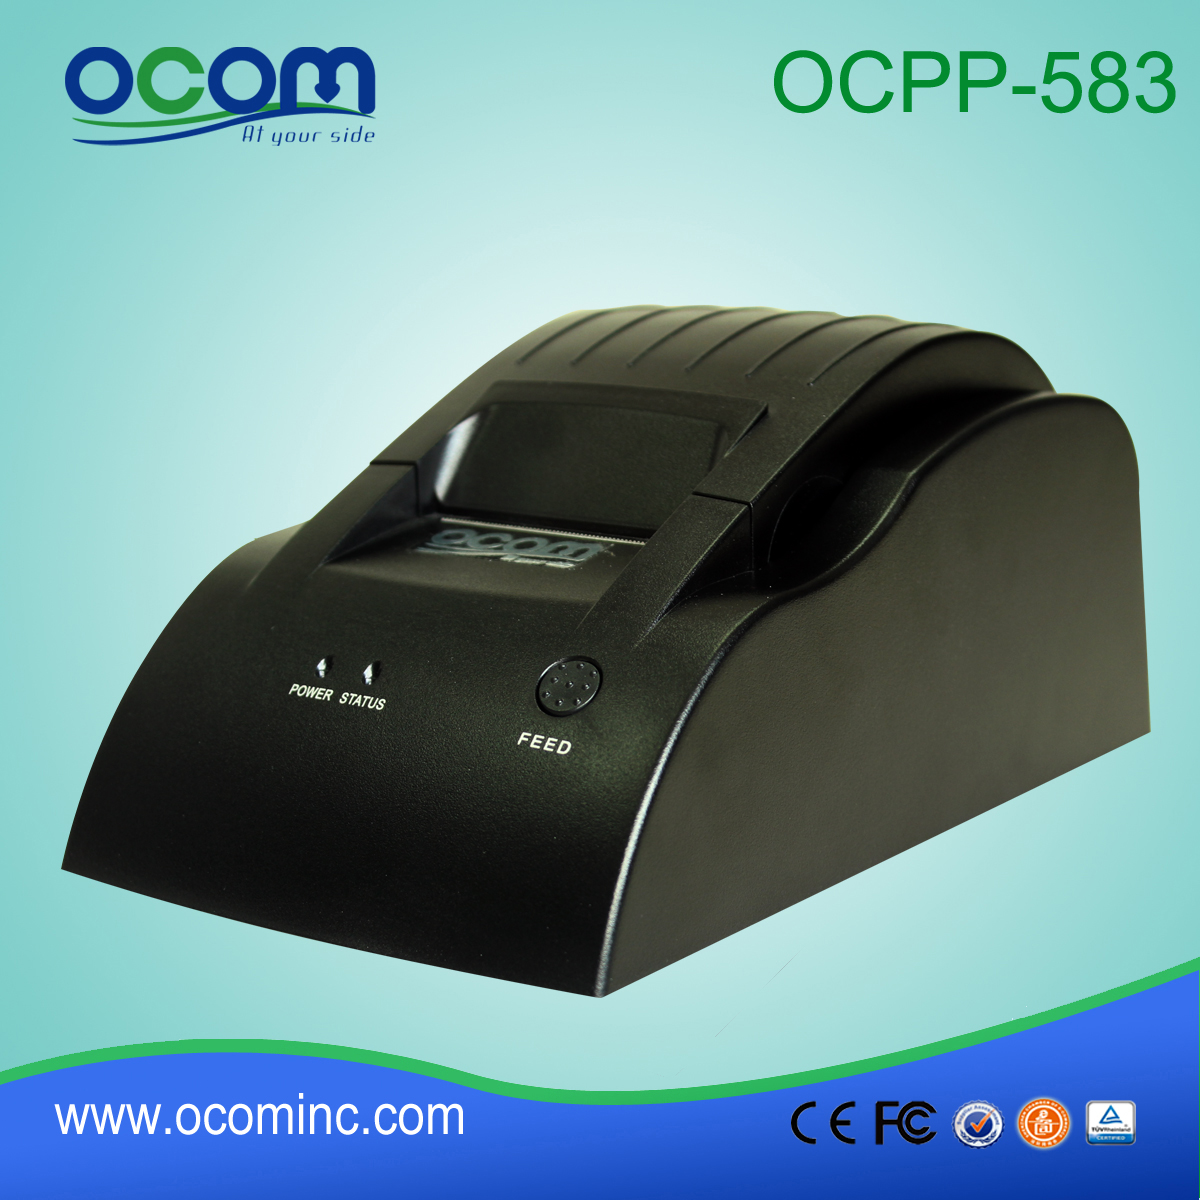 OCPP-583: 2015 надежное снабжение 58 термопринтер, ККМ